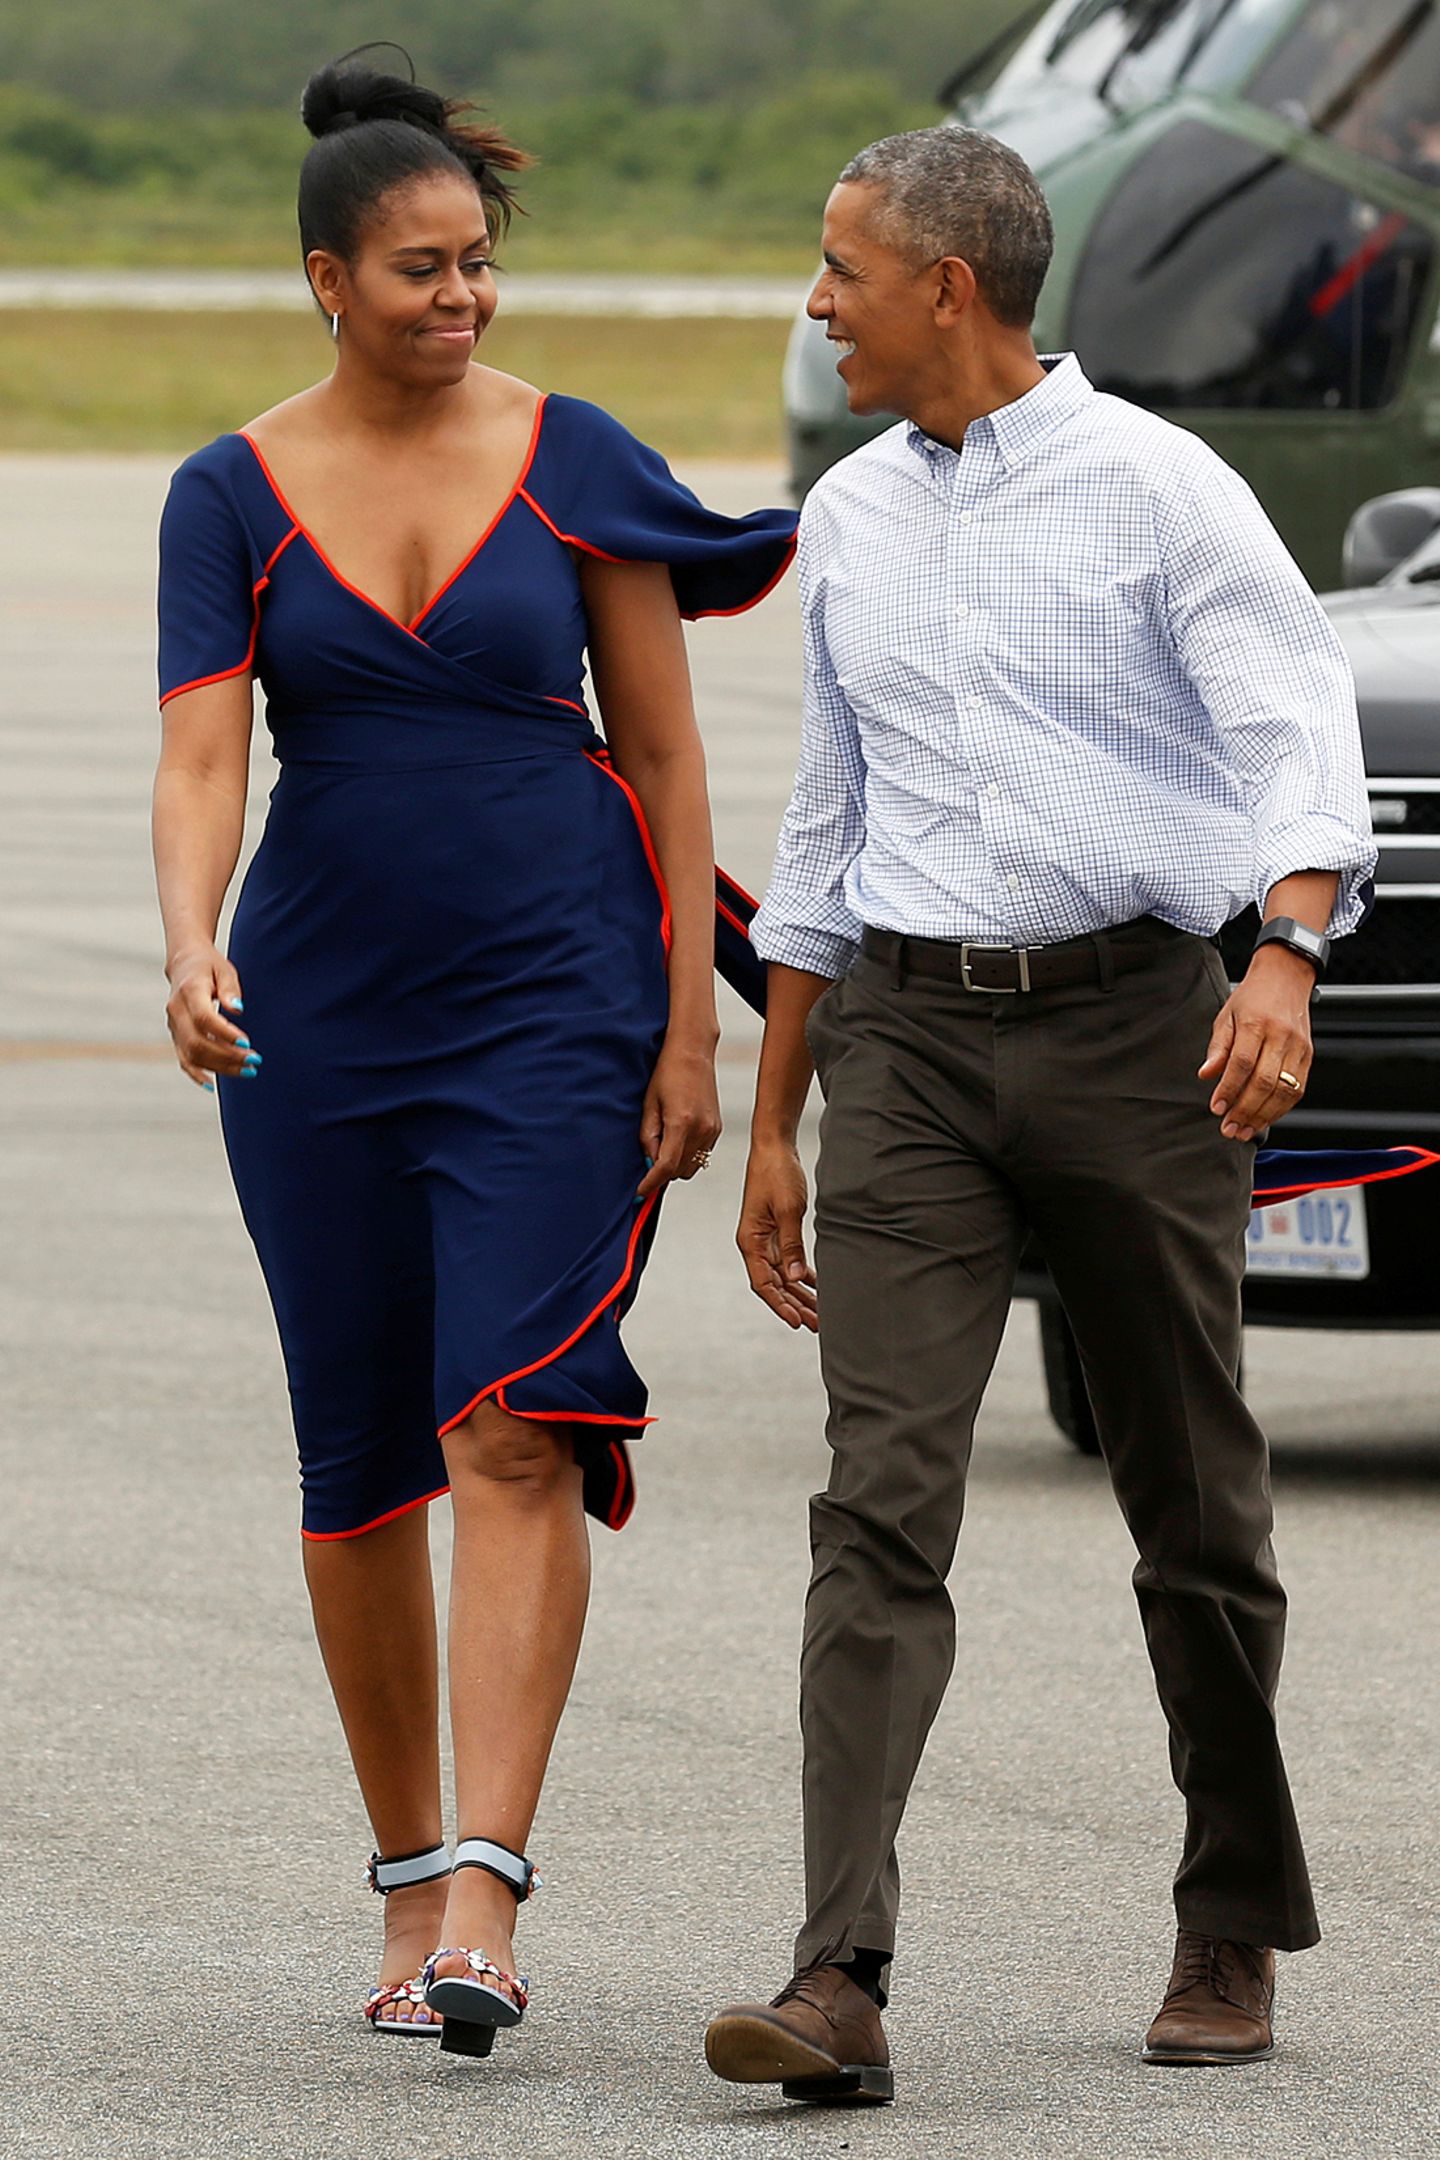 Ab in den verdienten Urlaub nach Martha's Vineyard geht es für Michelle im eleganten, blauen Sommerkleid.